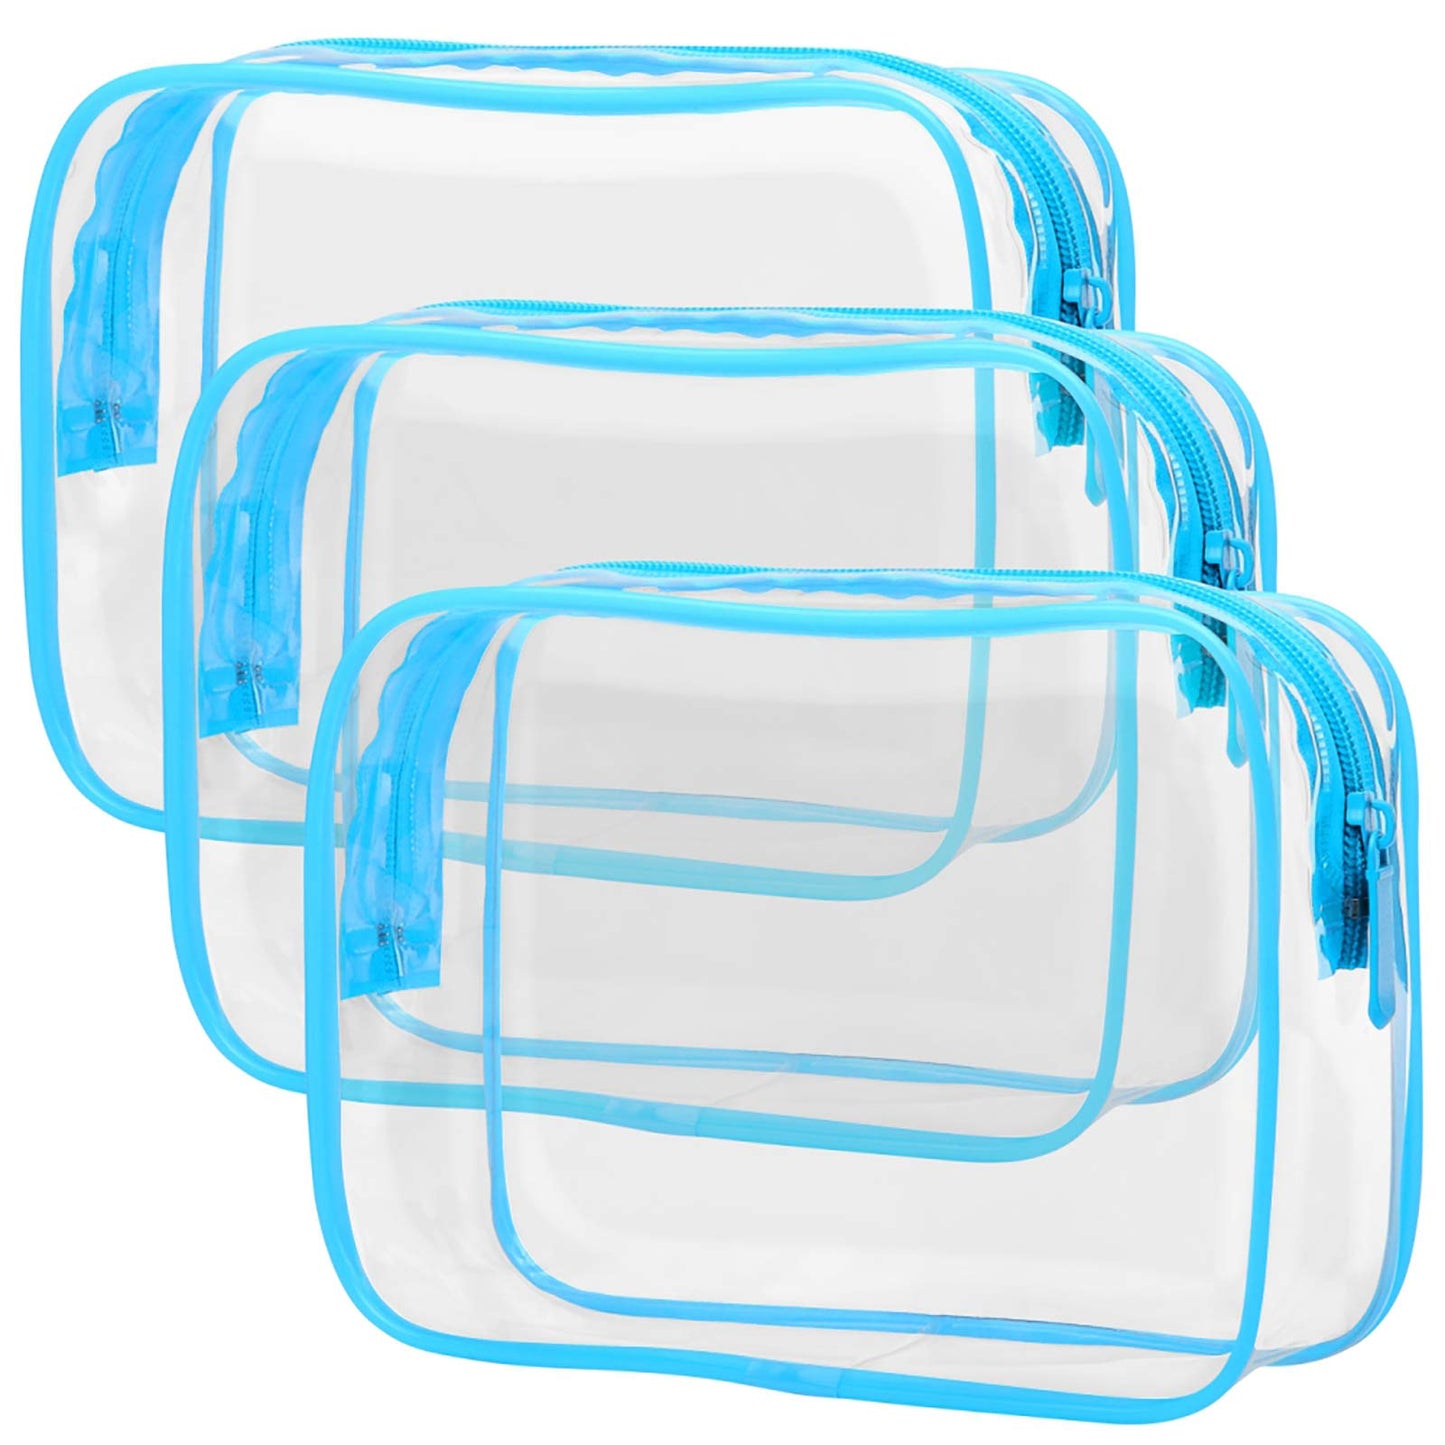 Transparent wash bag set for family